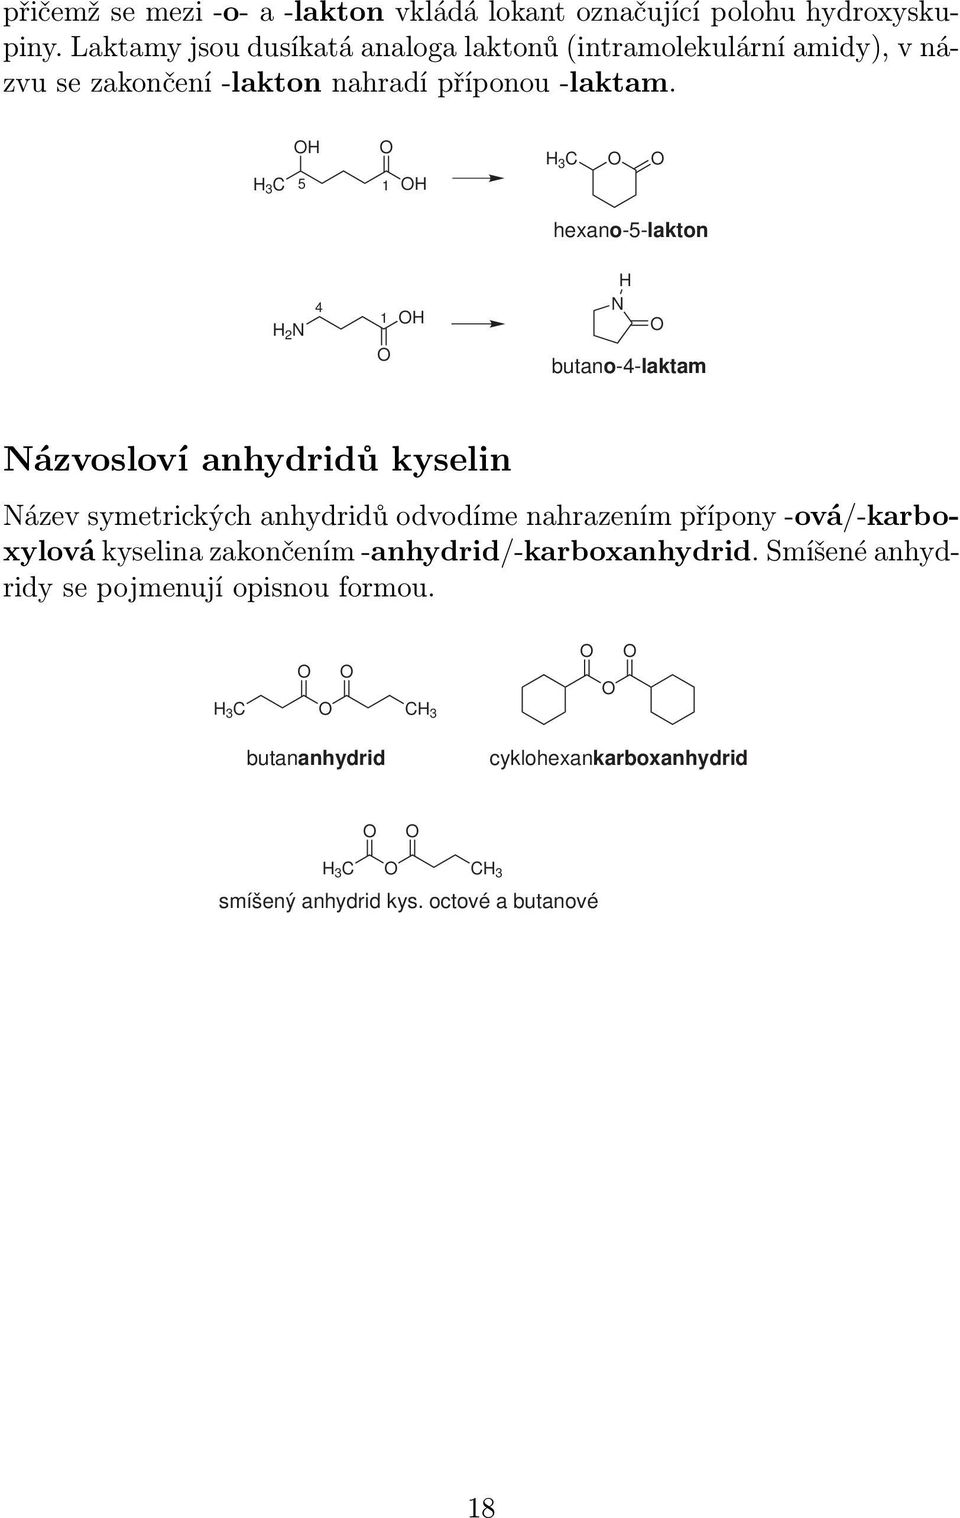 3 5 1 3 hexano-5-lakton 2 4 1 butano-4-laktam ázvosloví anhydridů kyselin ázev symetrických anhydridů odvodíme nahrazením přípony